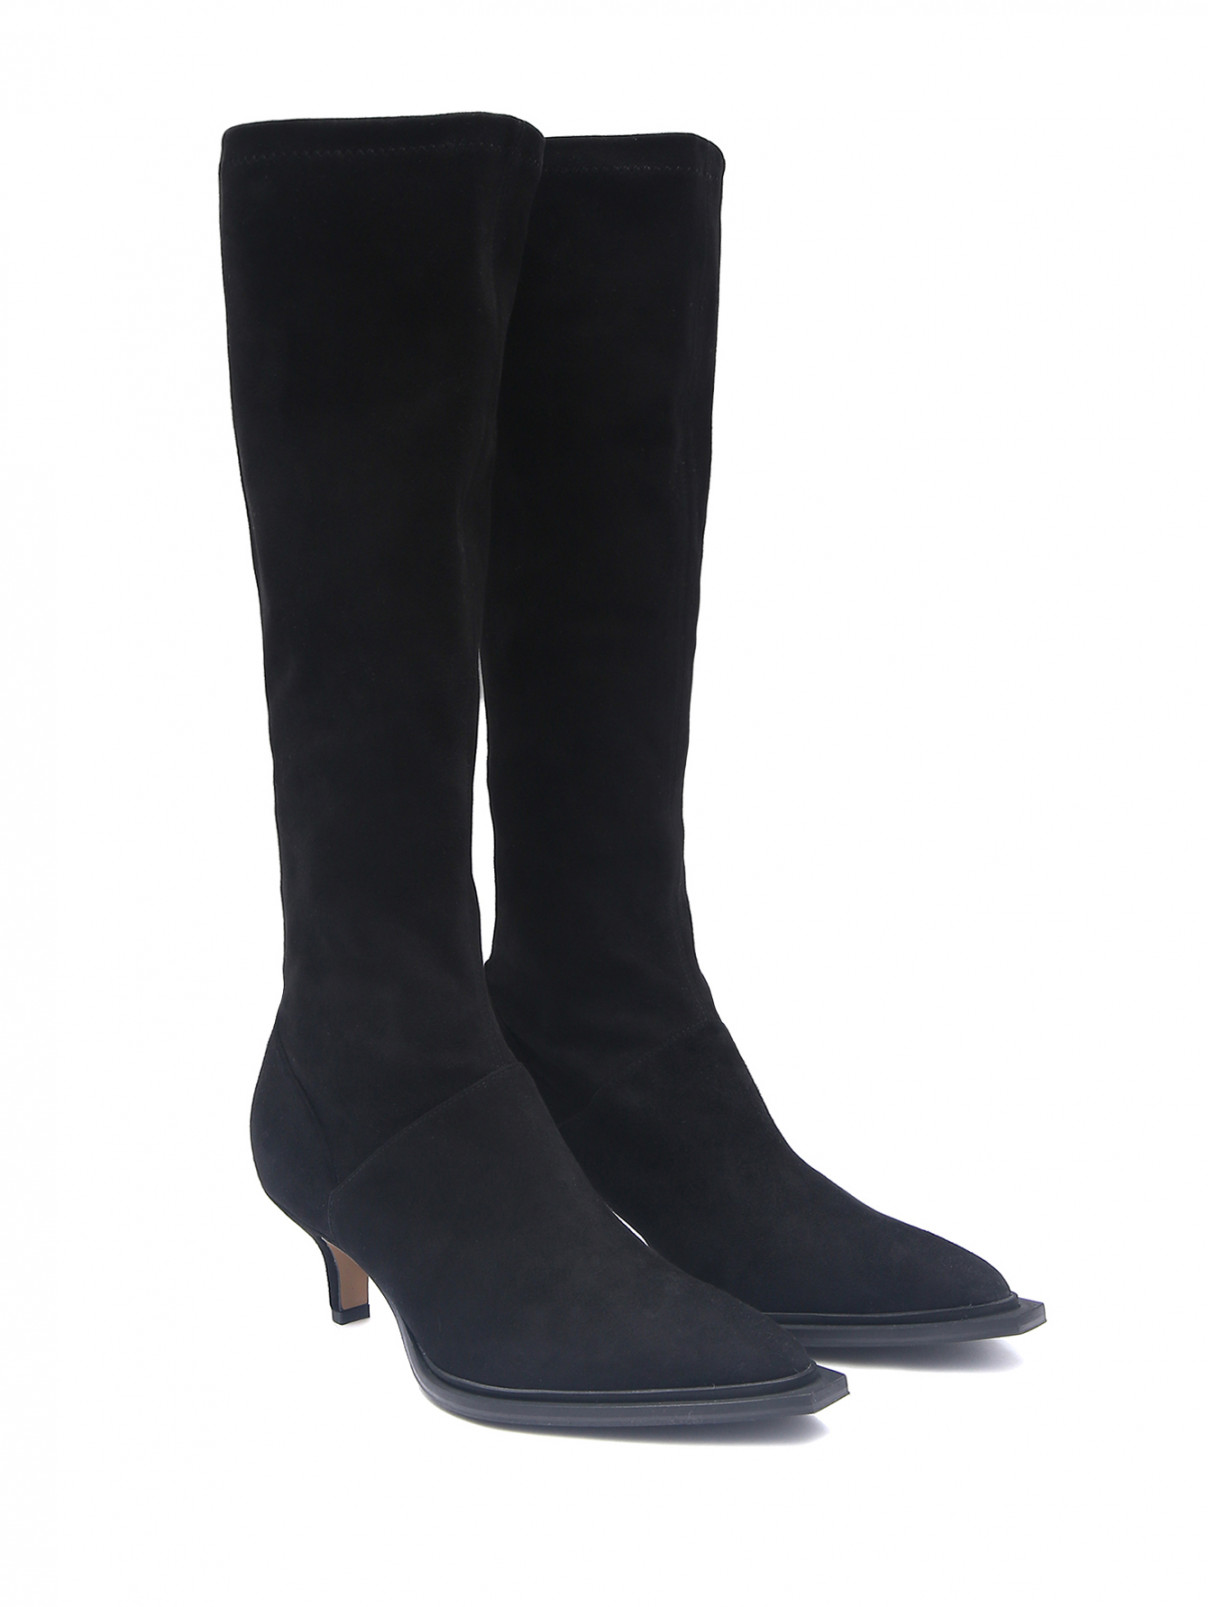 Сапоги из кожи на среднем каблуке Marina Rinaldi  –  Общий вид  – Цвет:  Черный